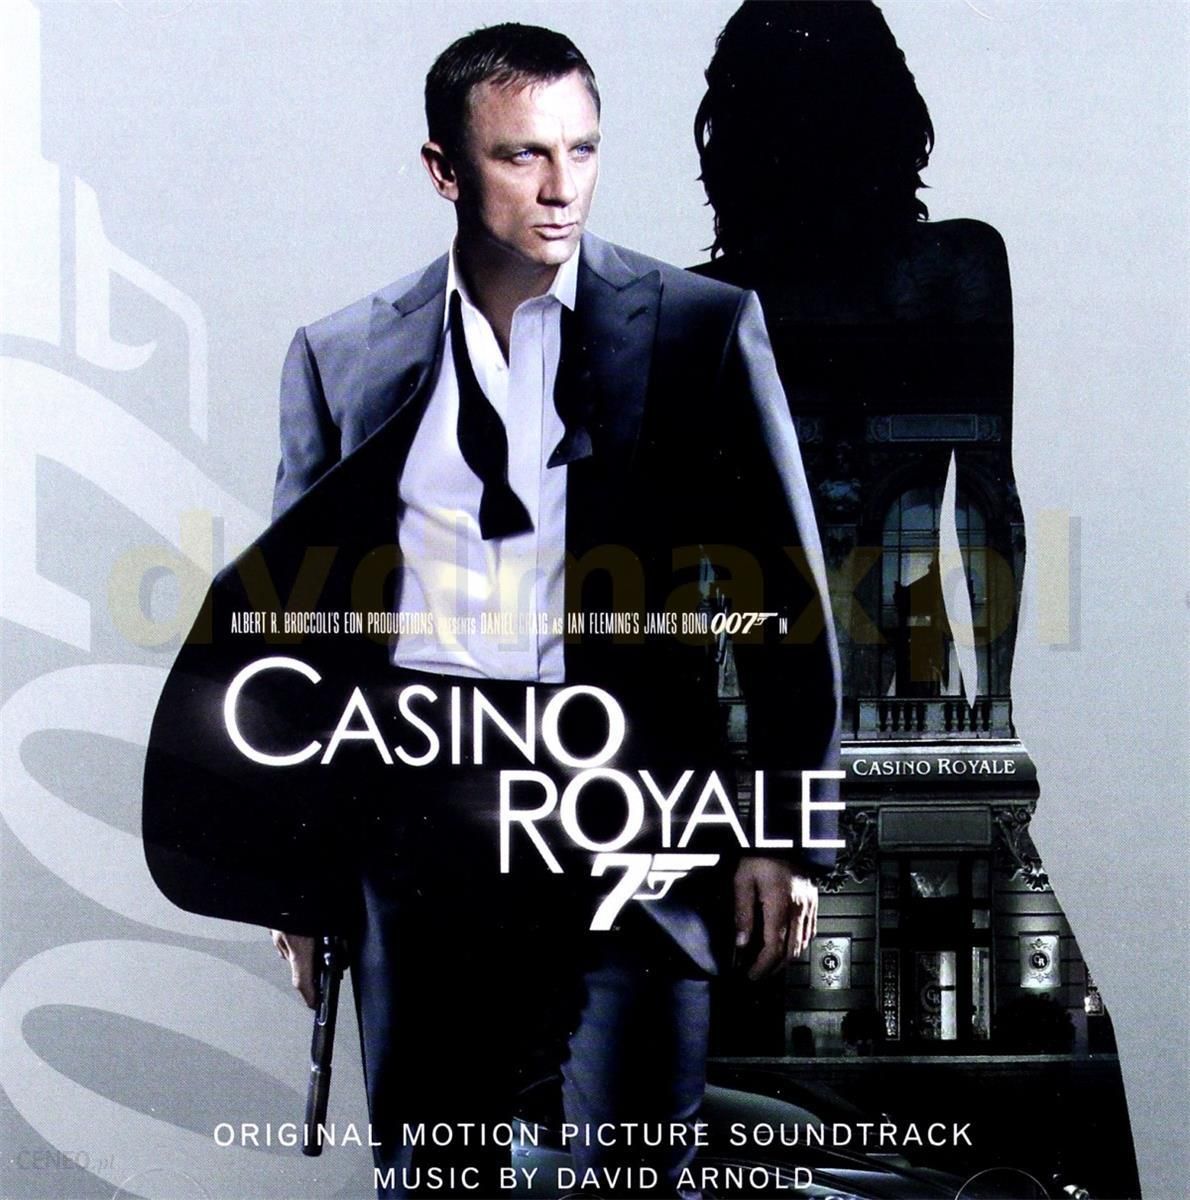 soundtrack to casino royale 007